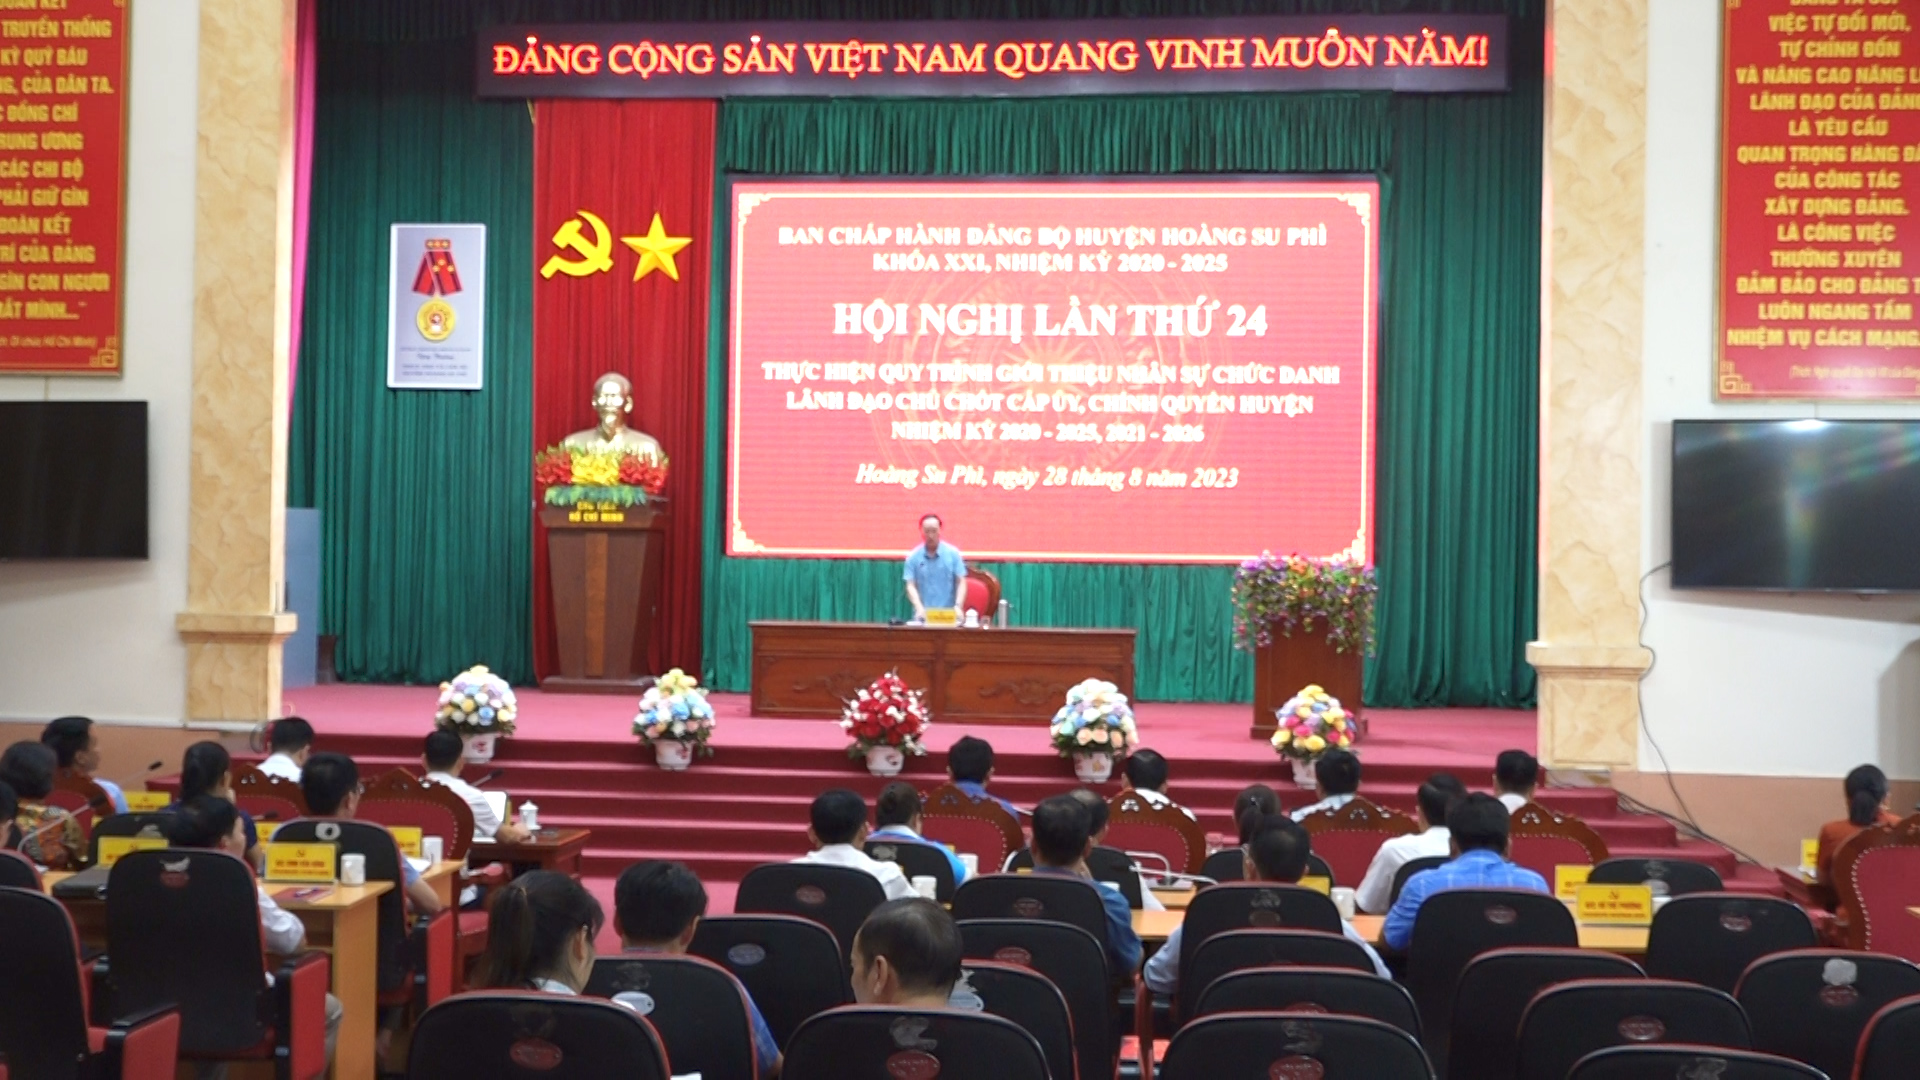 Huyện ủy Hoàng Su Phì tổ chức các Hội nghị thực hiện quy trình công tác cán bộ.